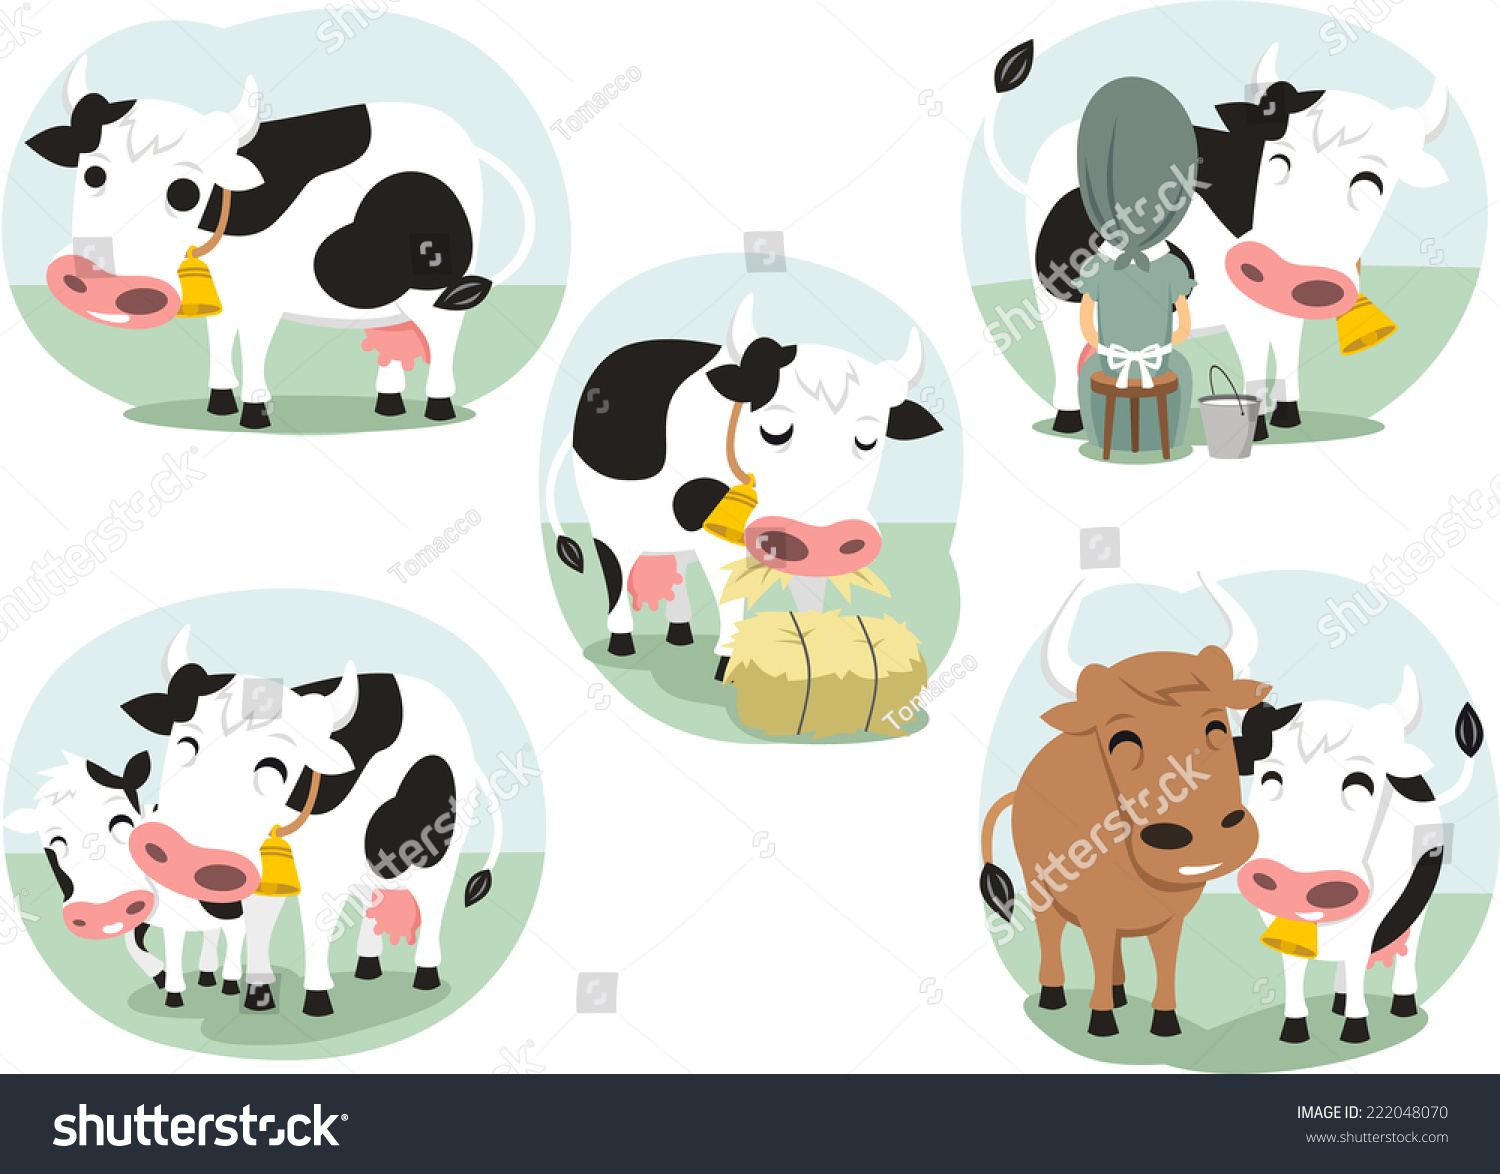 卡通牛操作集,与可爱的可爱的小母牛在五种不